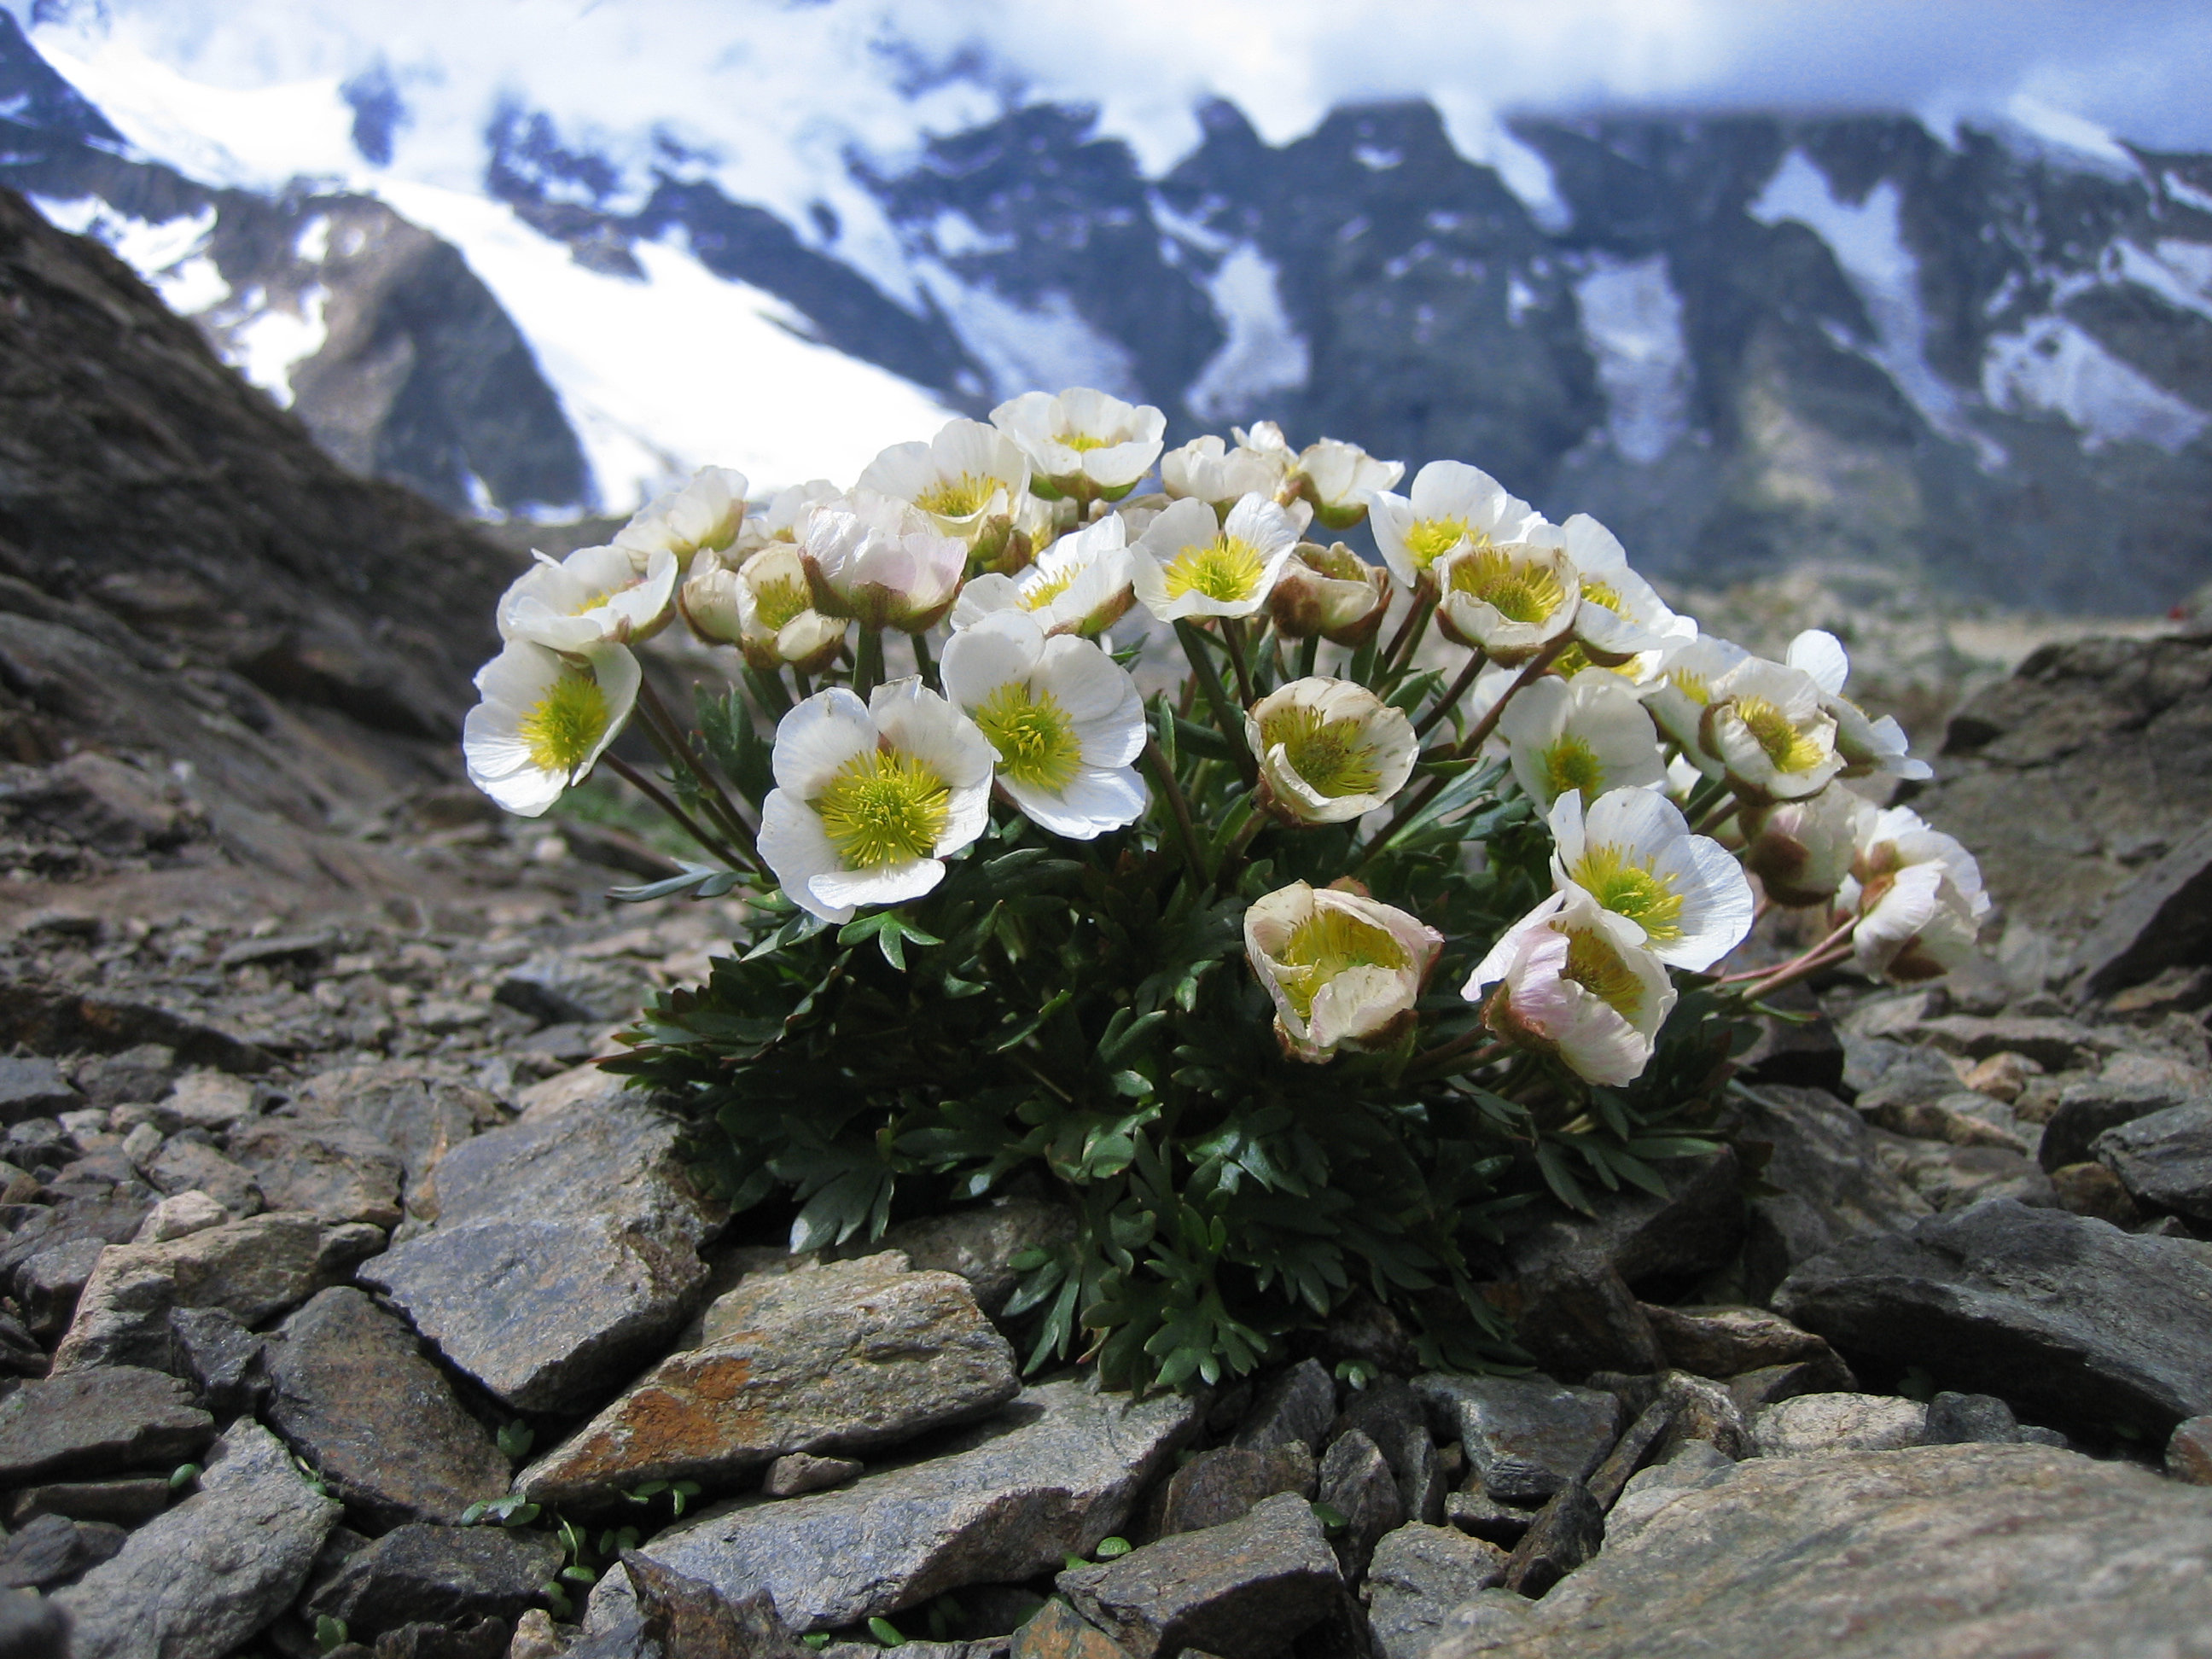 Photo 1The glacier buttercup or glacier crowfoot (Ranunculus glacialis) is a .jpg